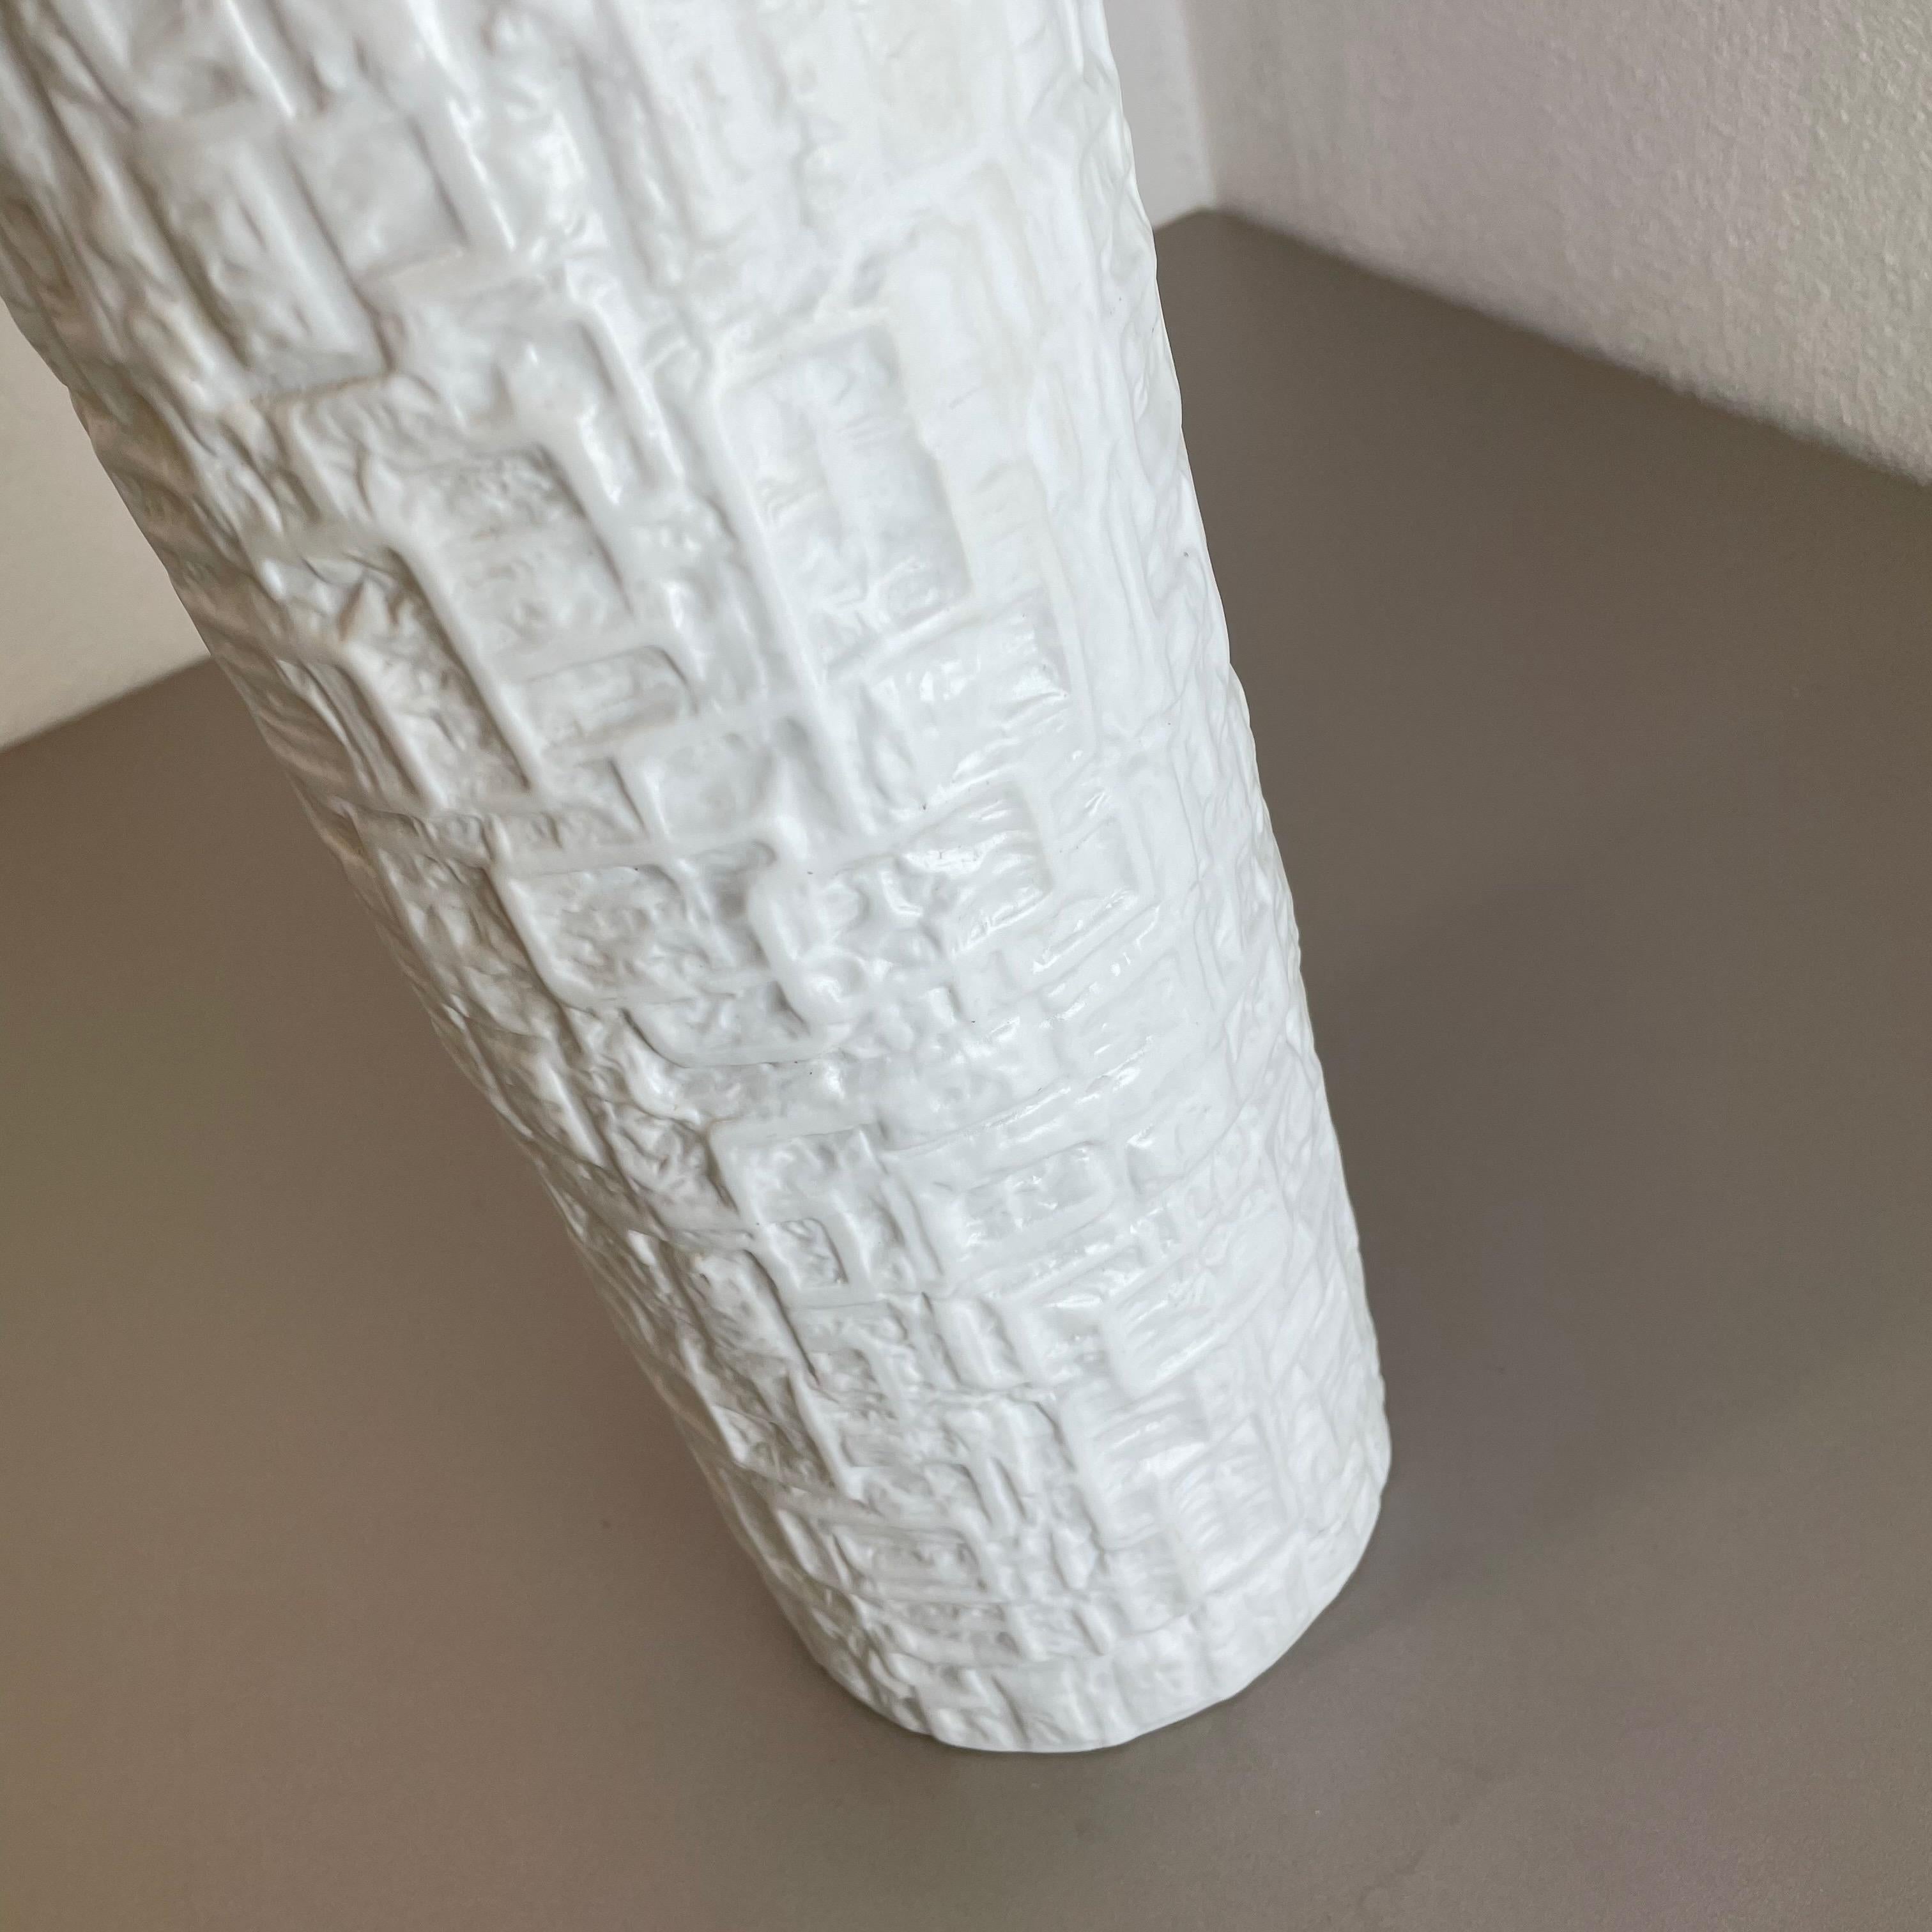 Large OP Art Vase Porcelain Vase by Martin Freyer for Rosenthal, Germany For Sale 1